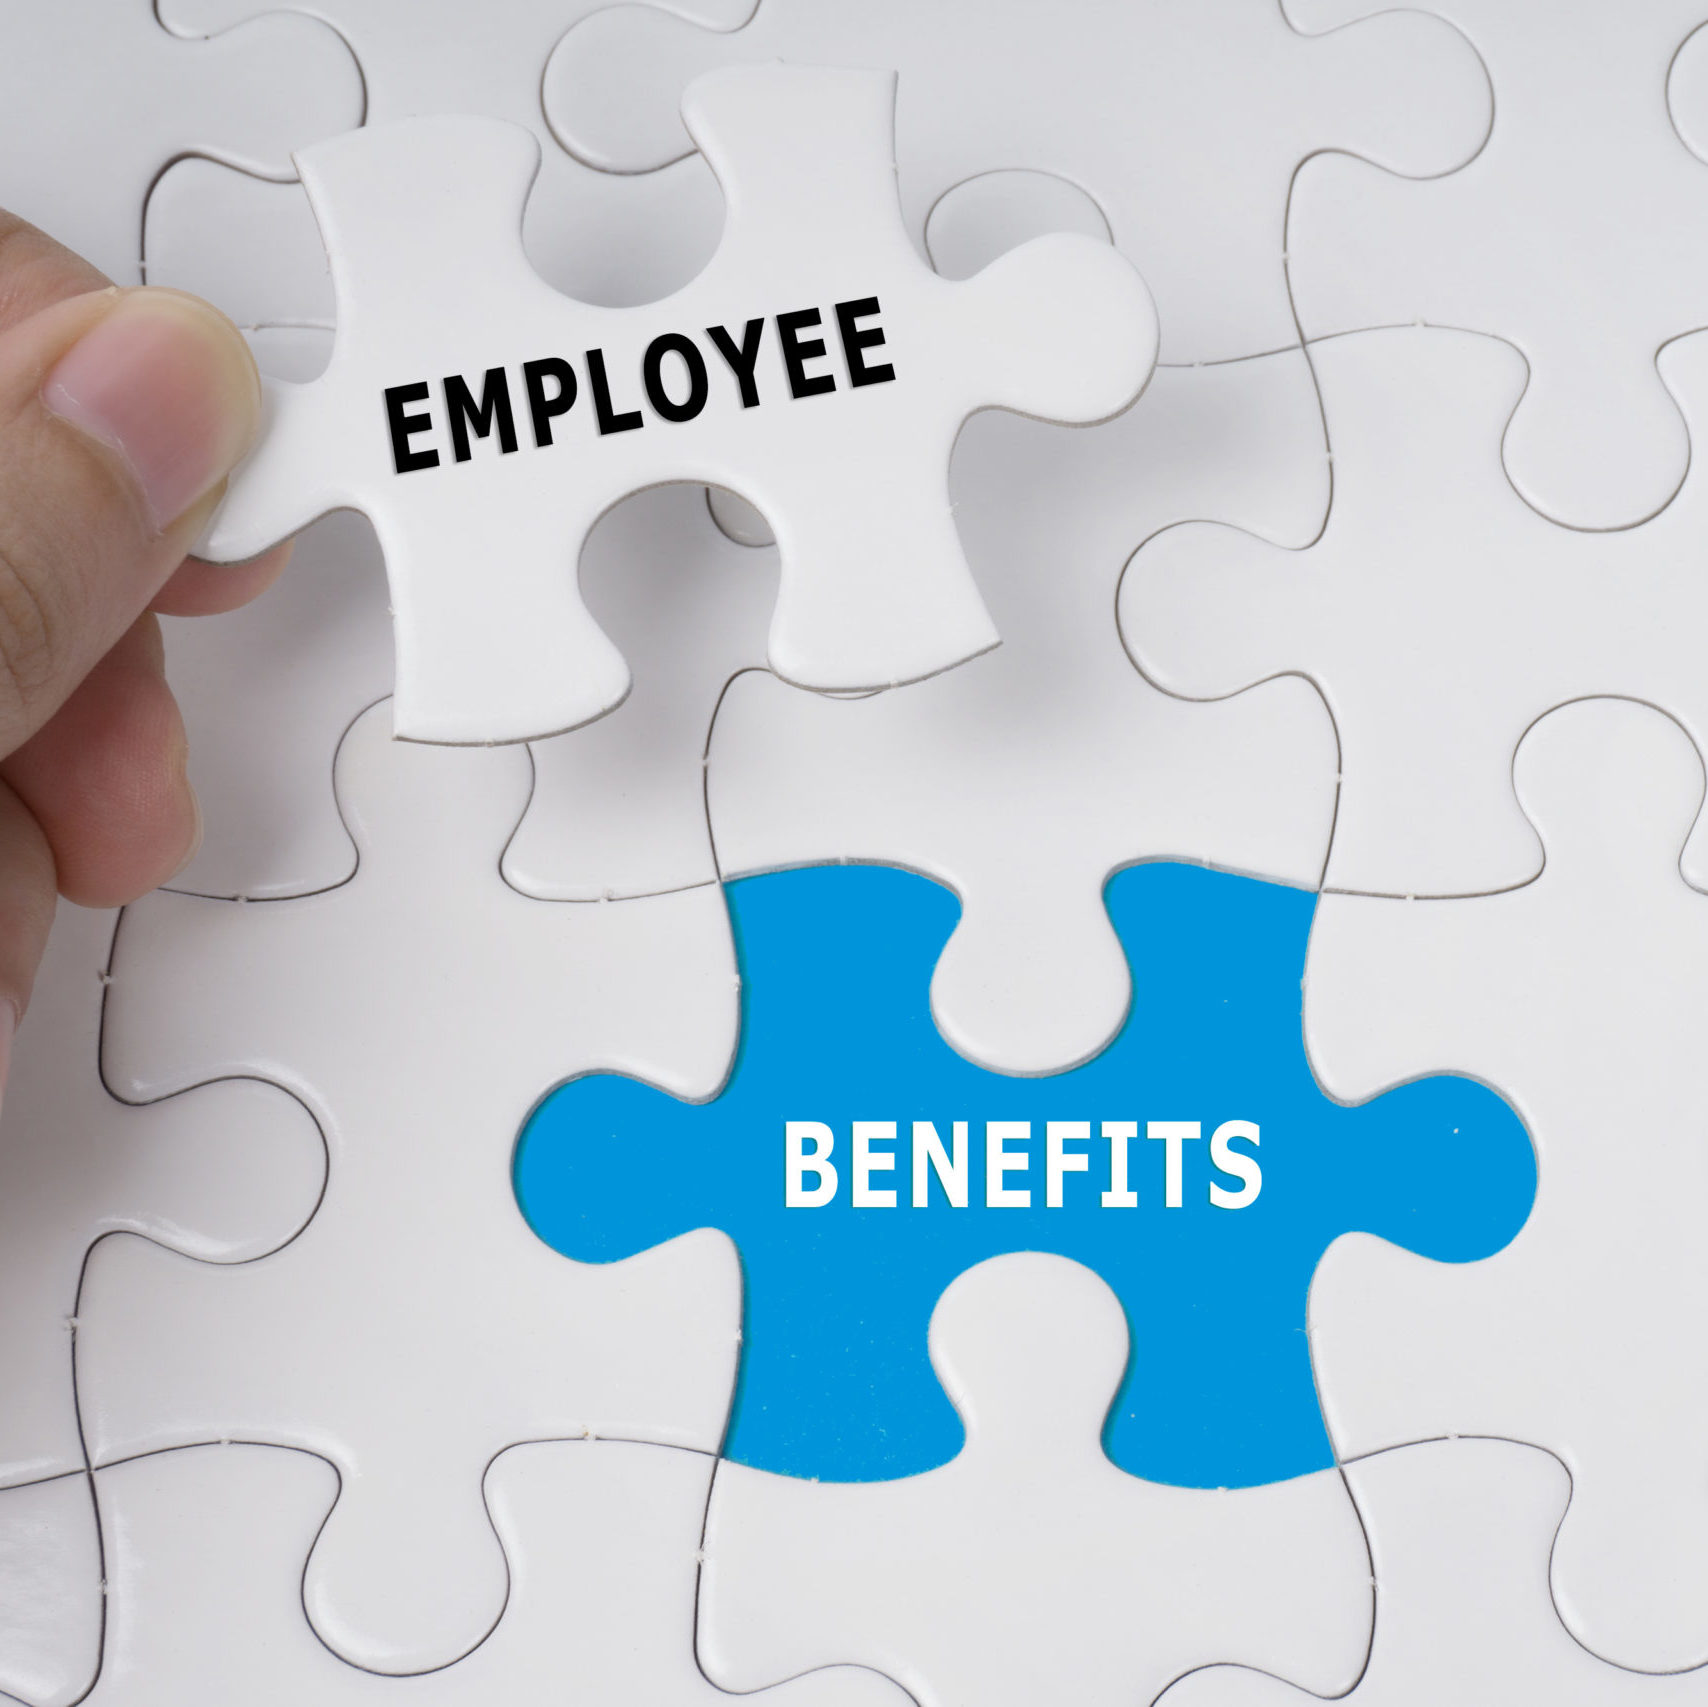 Employee-Benefits-PTA